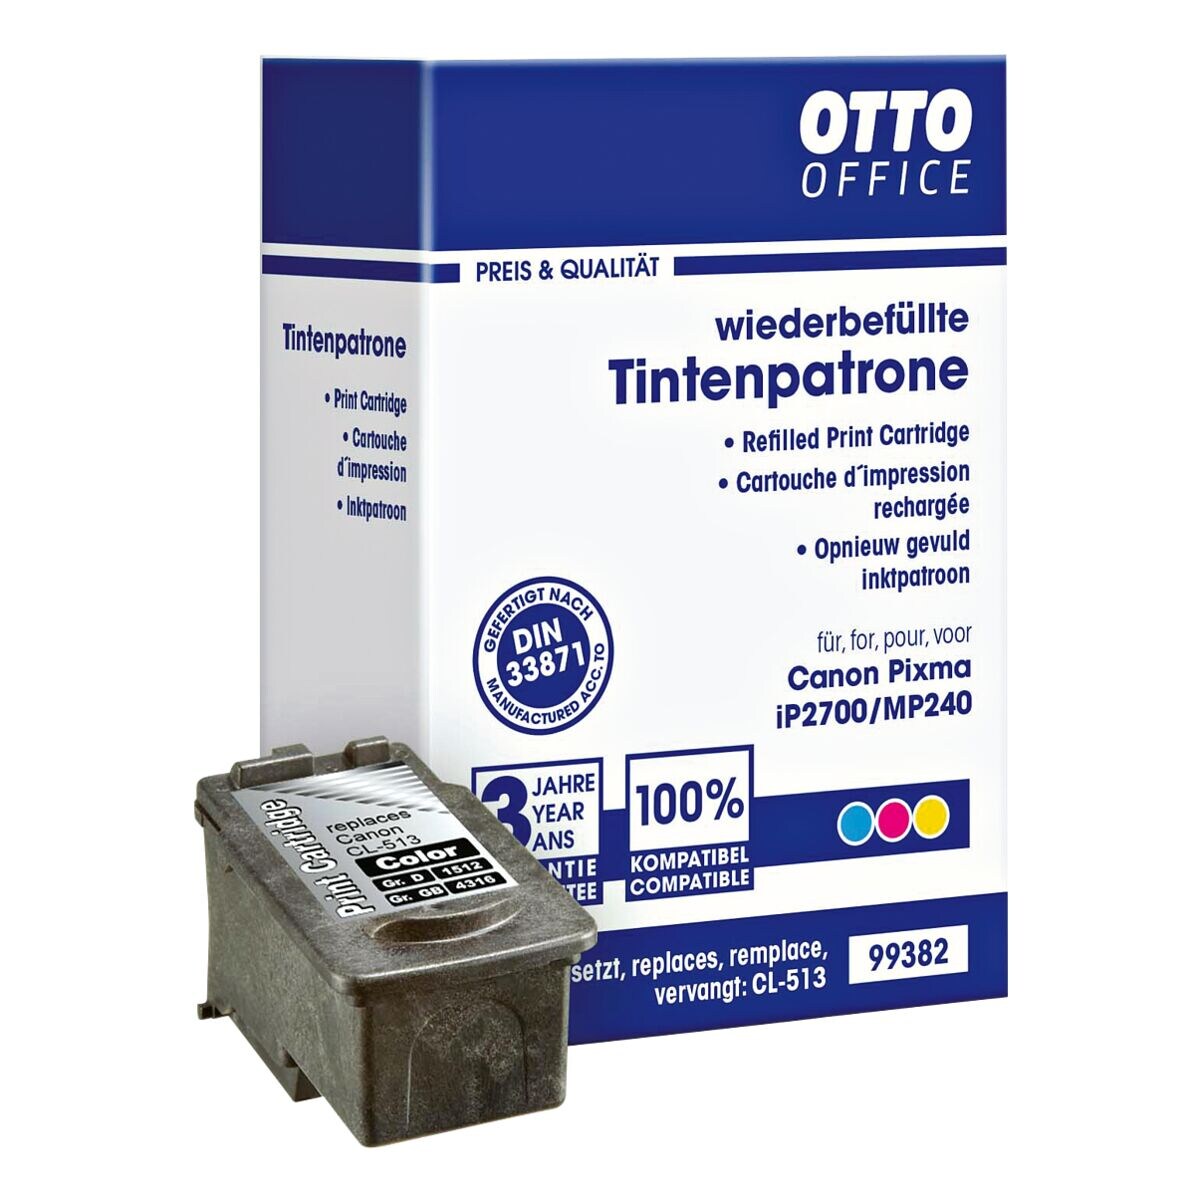 OTTO Office Tintenpatrone ersetzt Canon CL-513